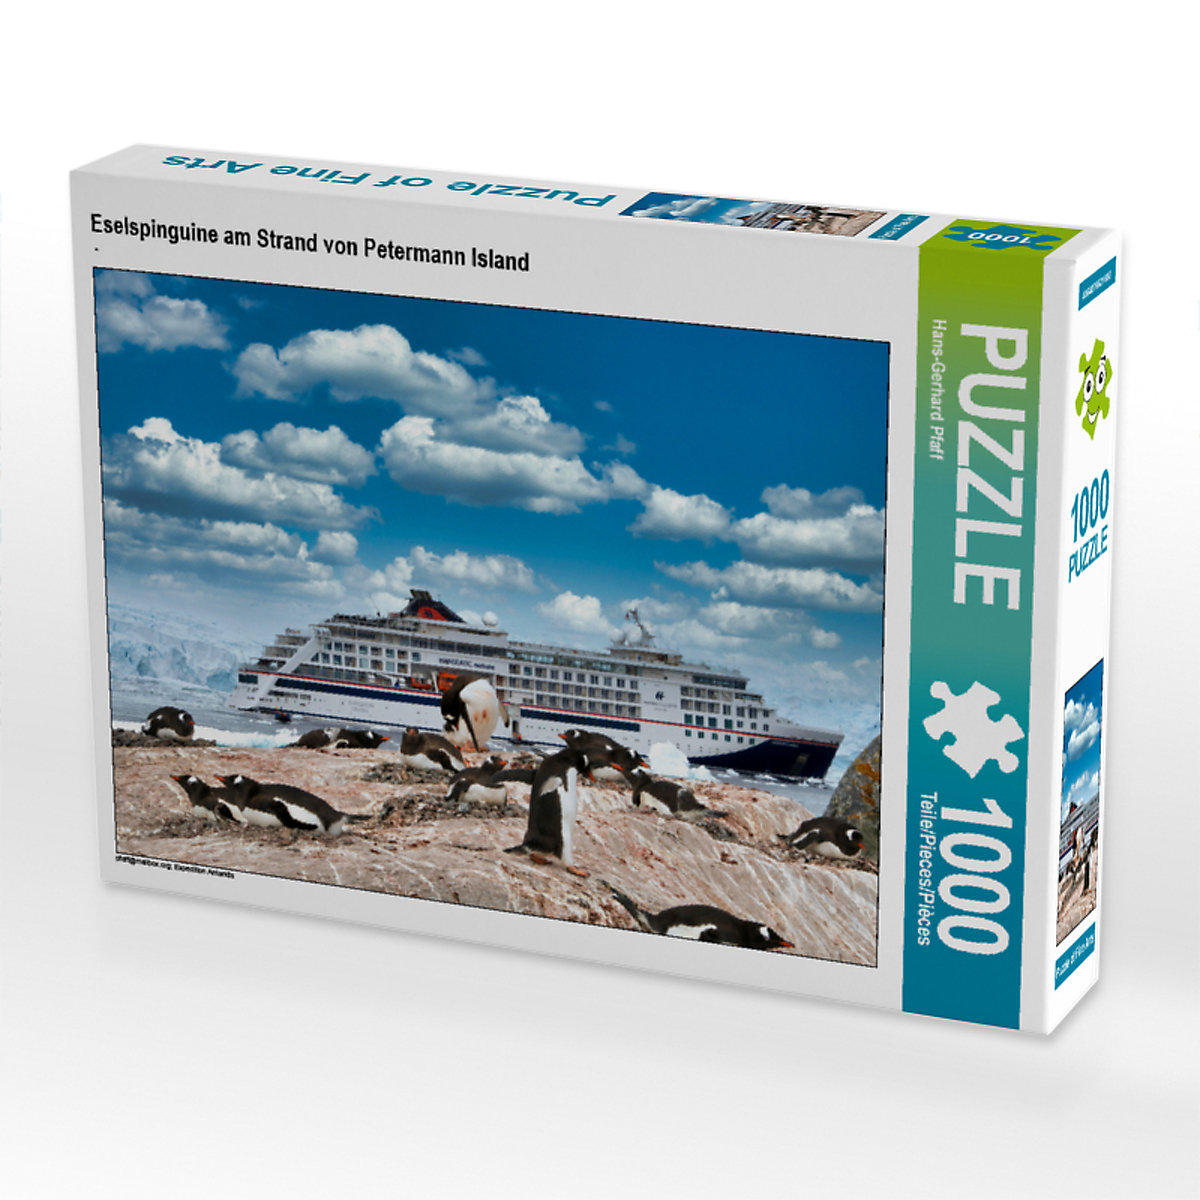 CALVENDO® Puzzle CALVENDO Puzzle Eselspinguine am Strand von Petermann Island 1000 Teile Foto-Puzzle für glückliche Stunden